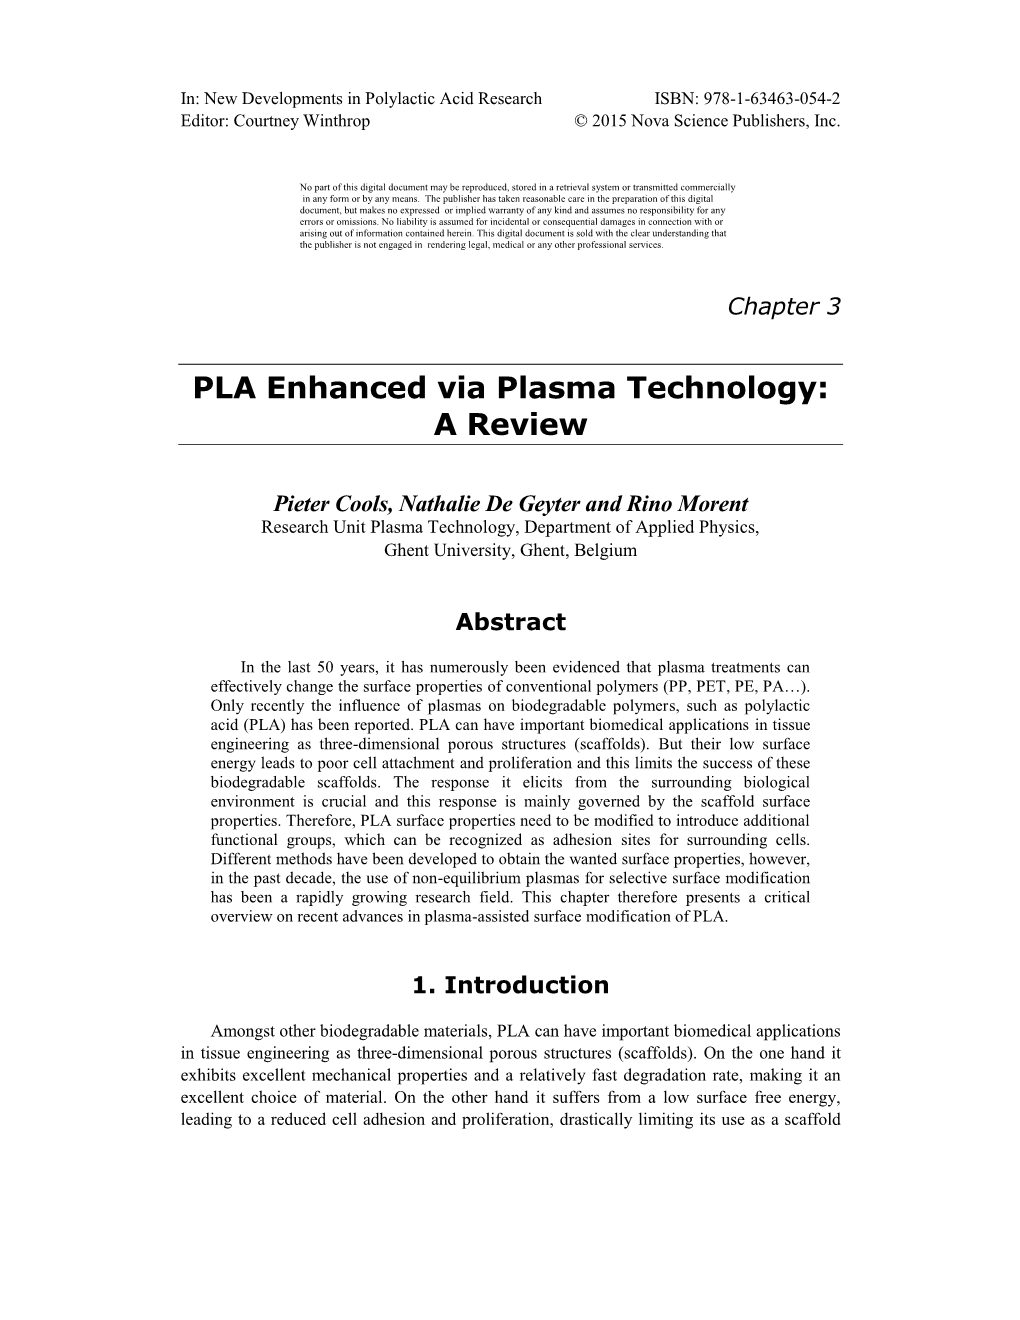 PLA Enhanced Via Plasma Technology: a Review